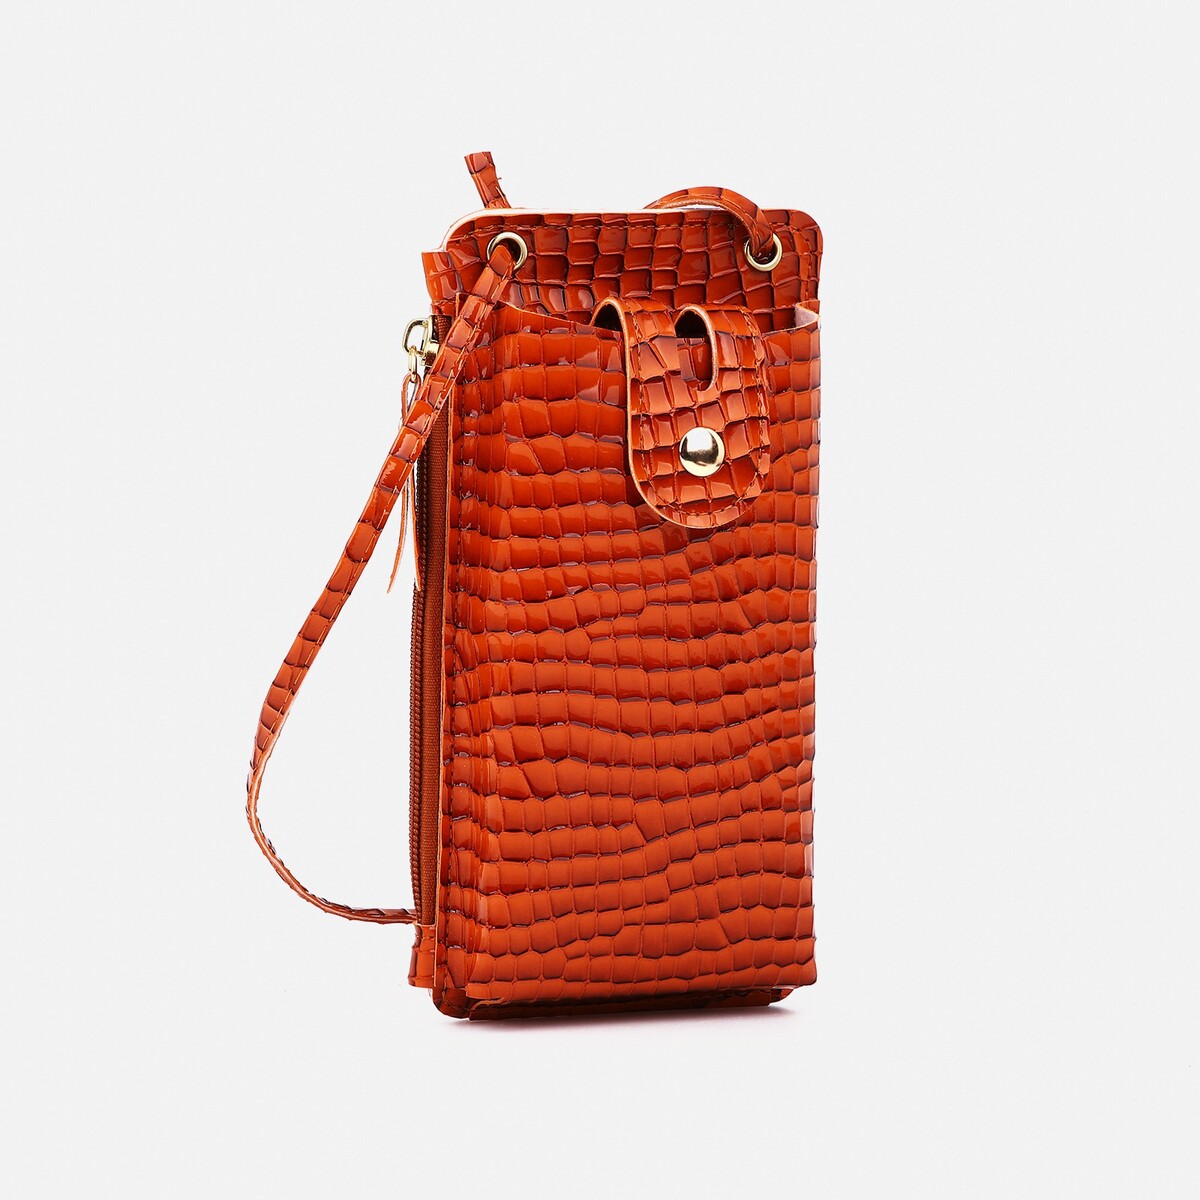 Сумка детская на магните, длинный ремень, цвет оранжевый сумка мессенджер на магните оранжевый